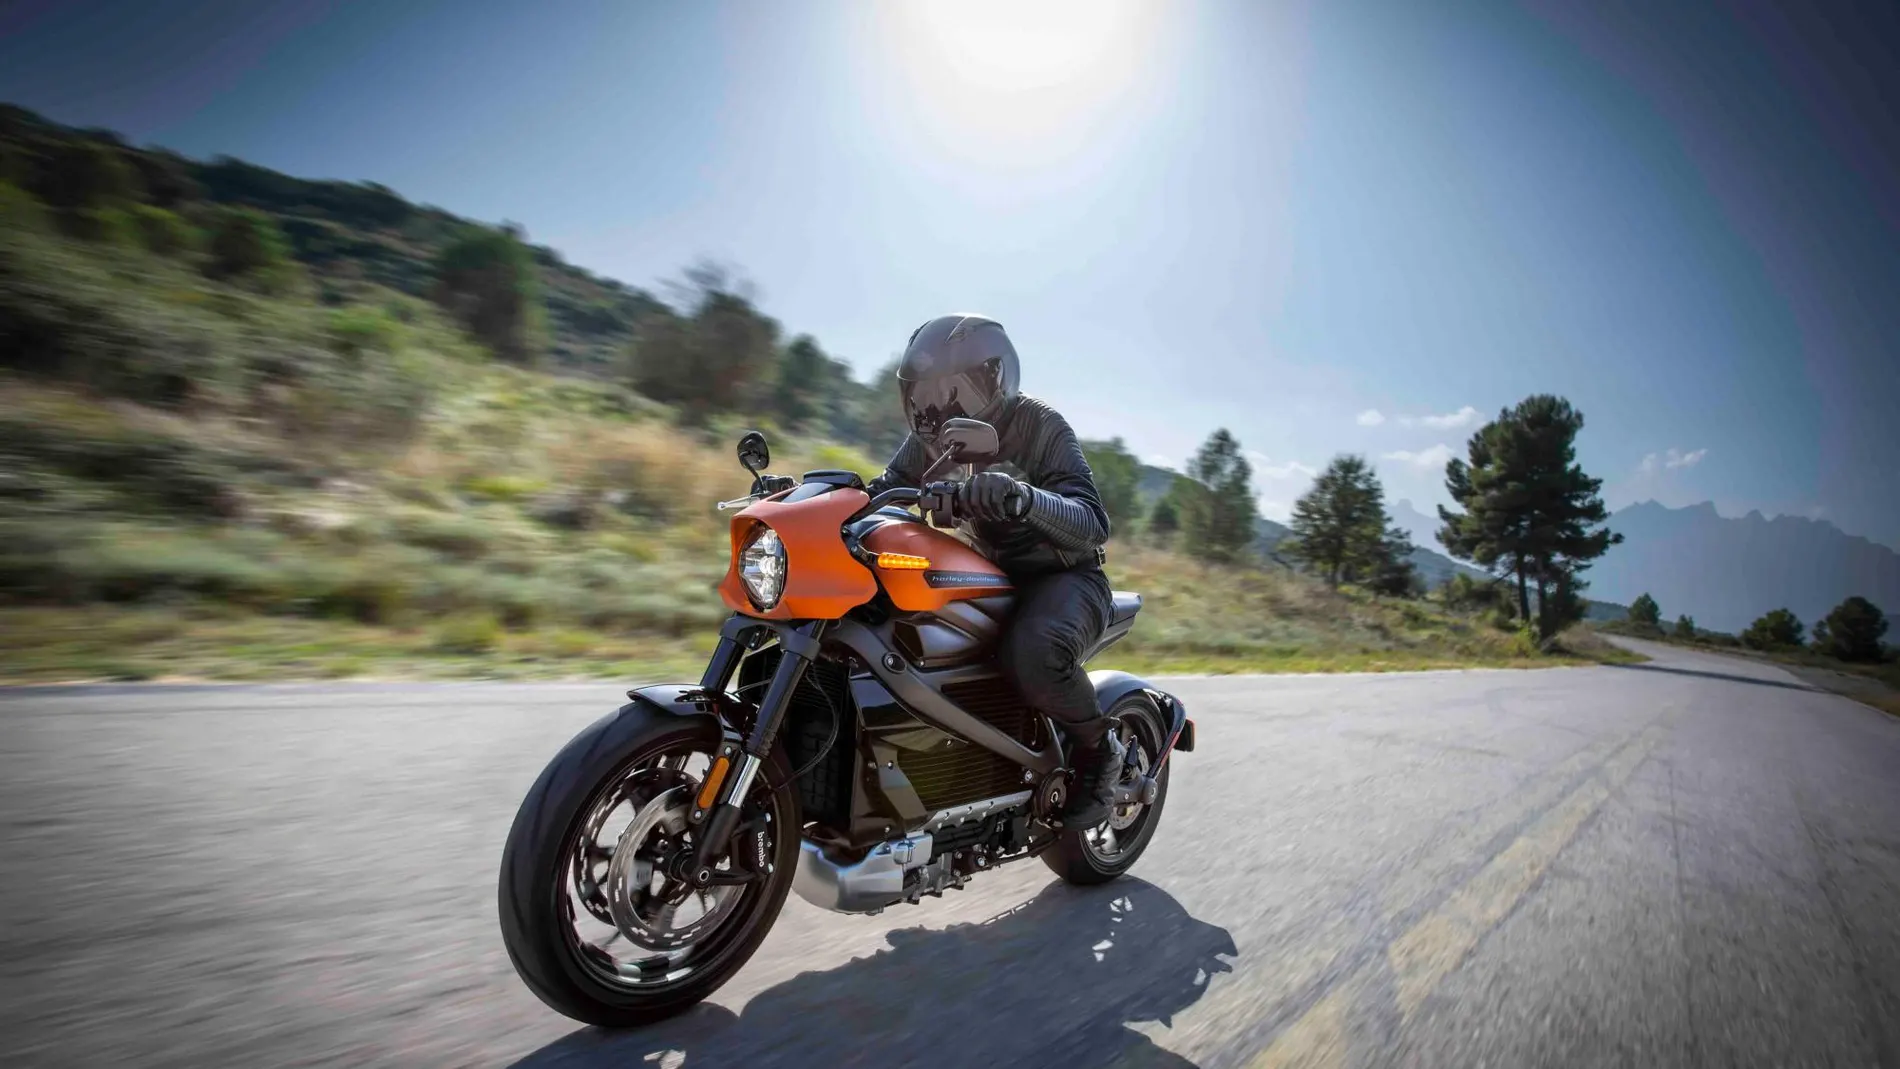 Harley ha creado un nuevo sonido para el motor que se incrementa con la velocidad.